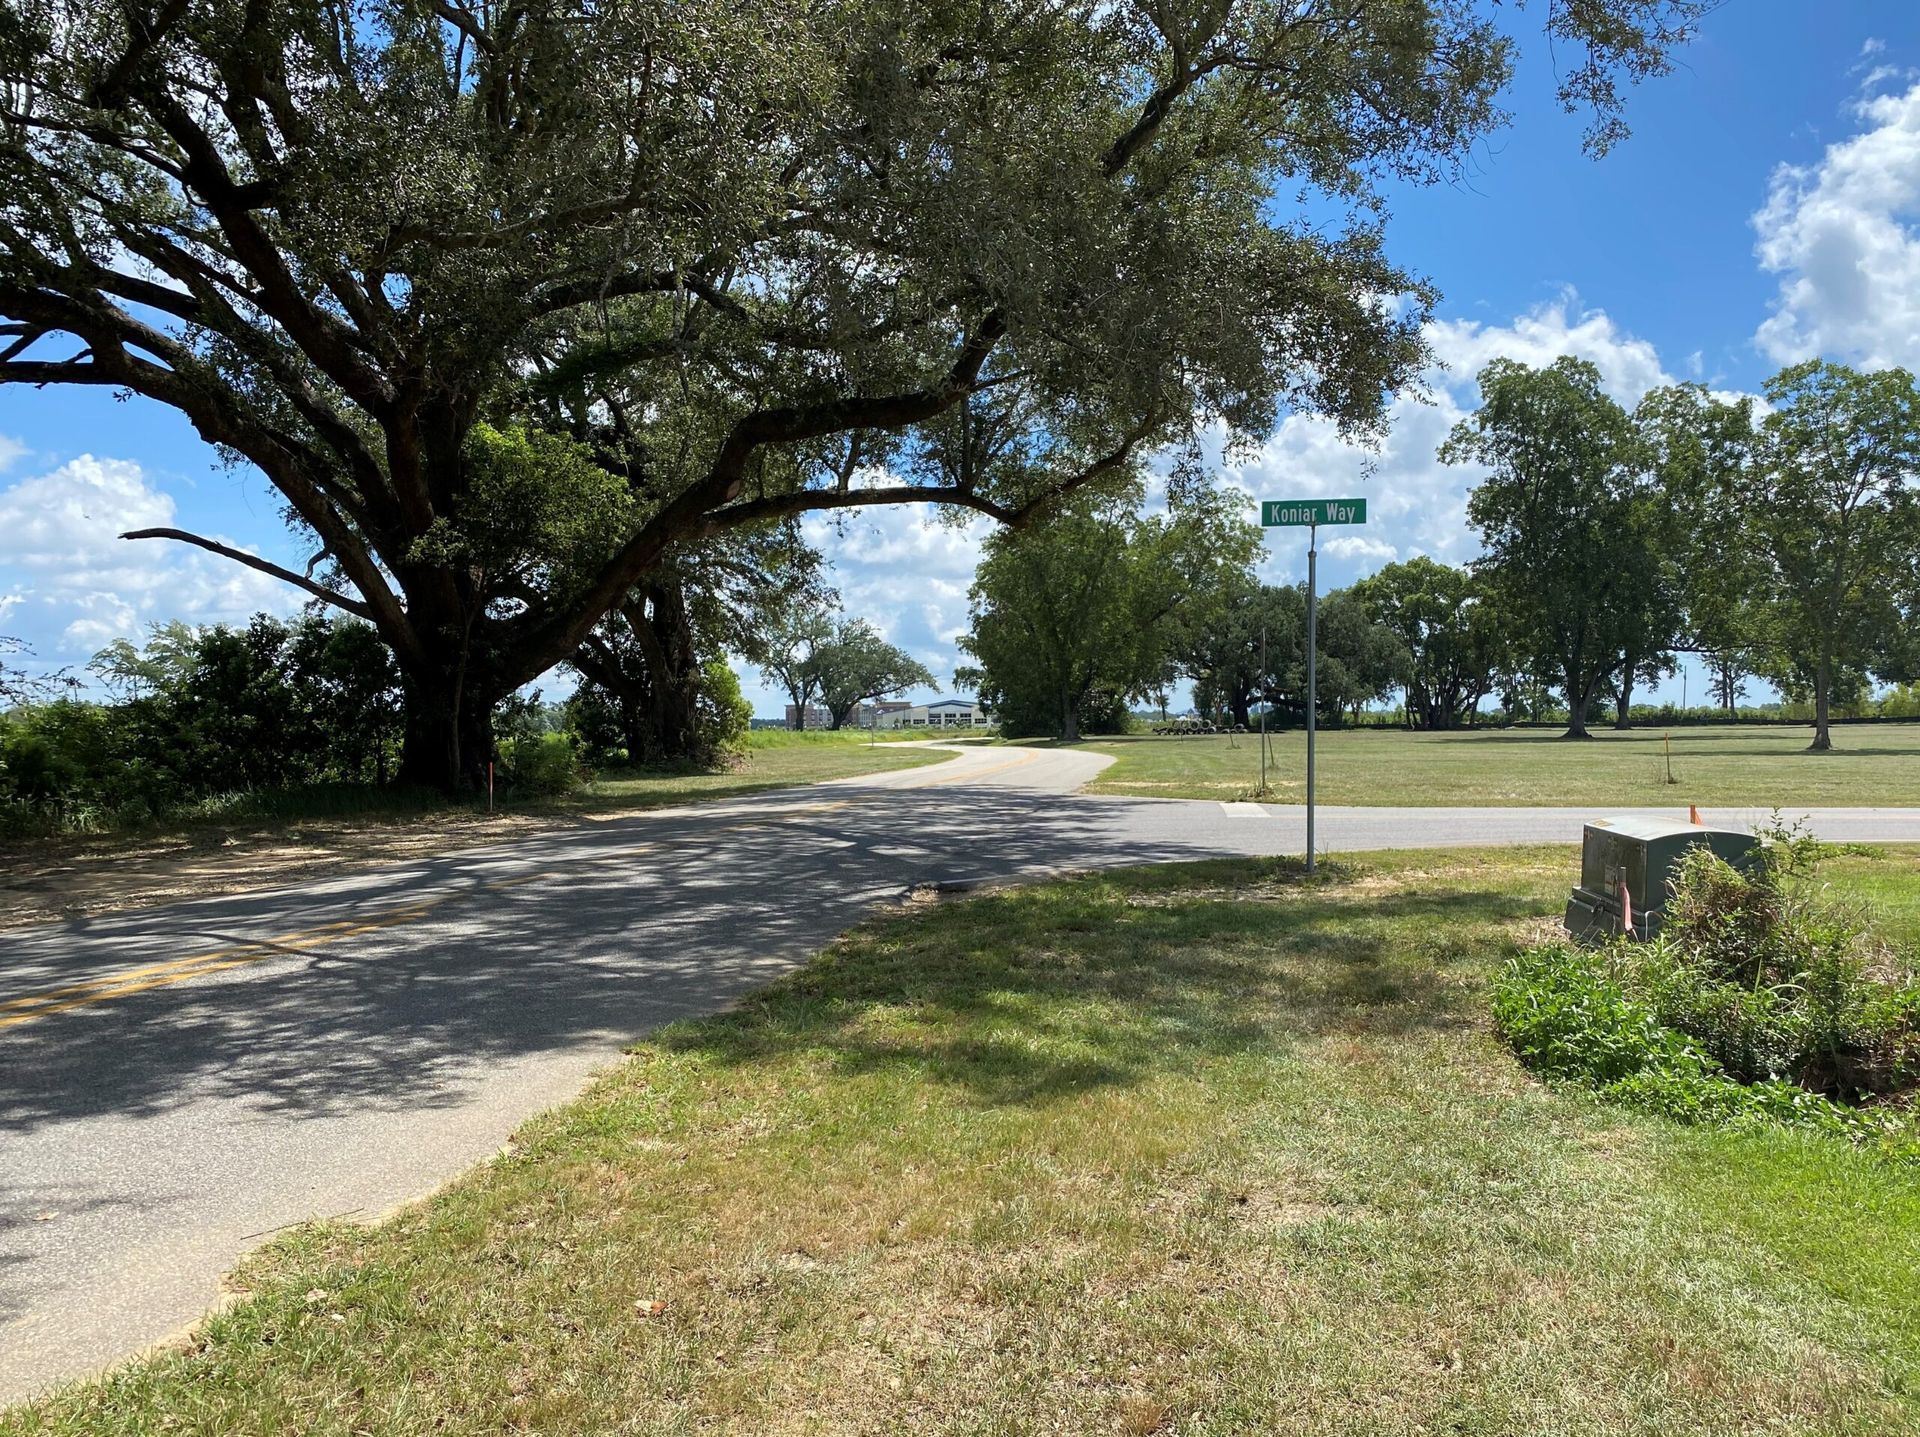 Stabler Avenue in Foley Alabama